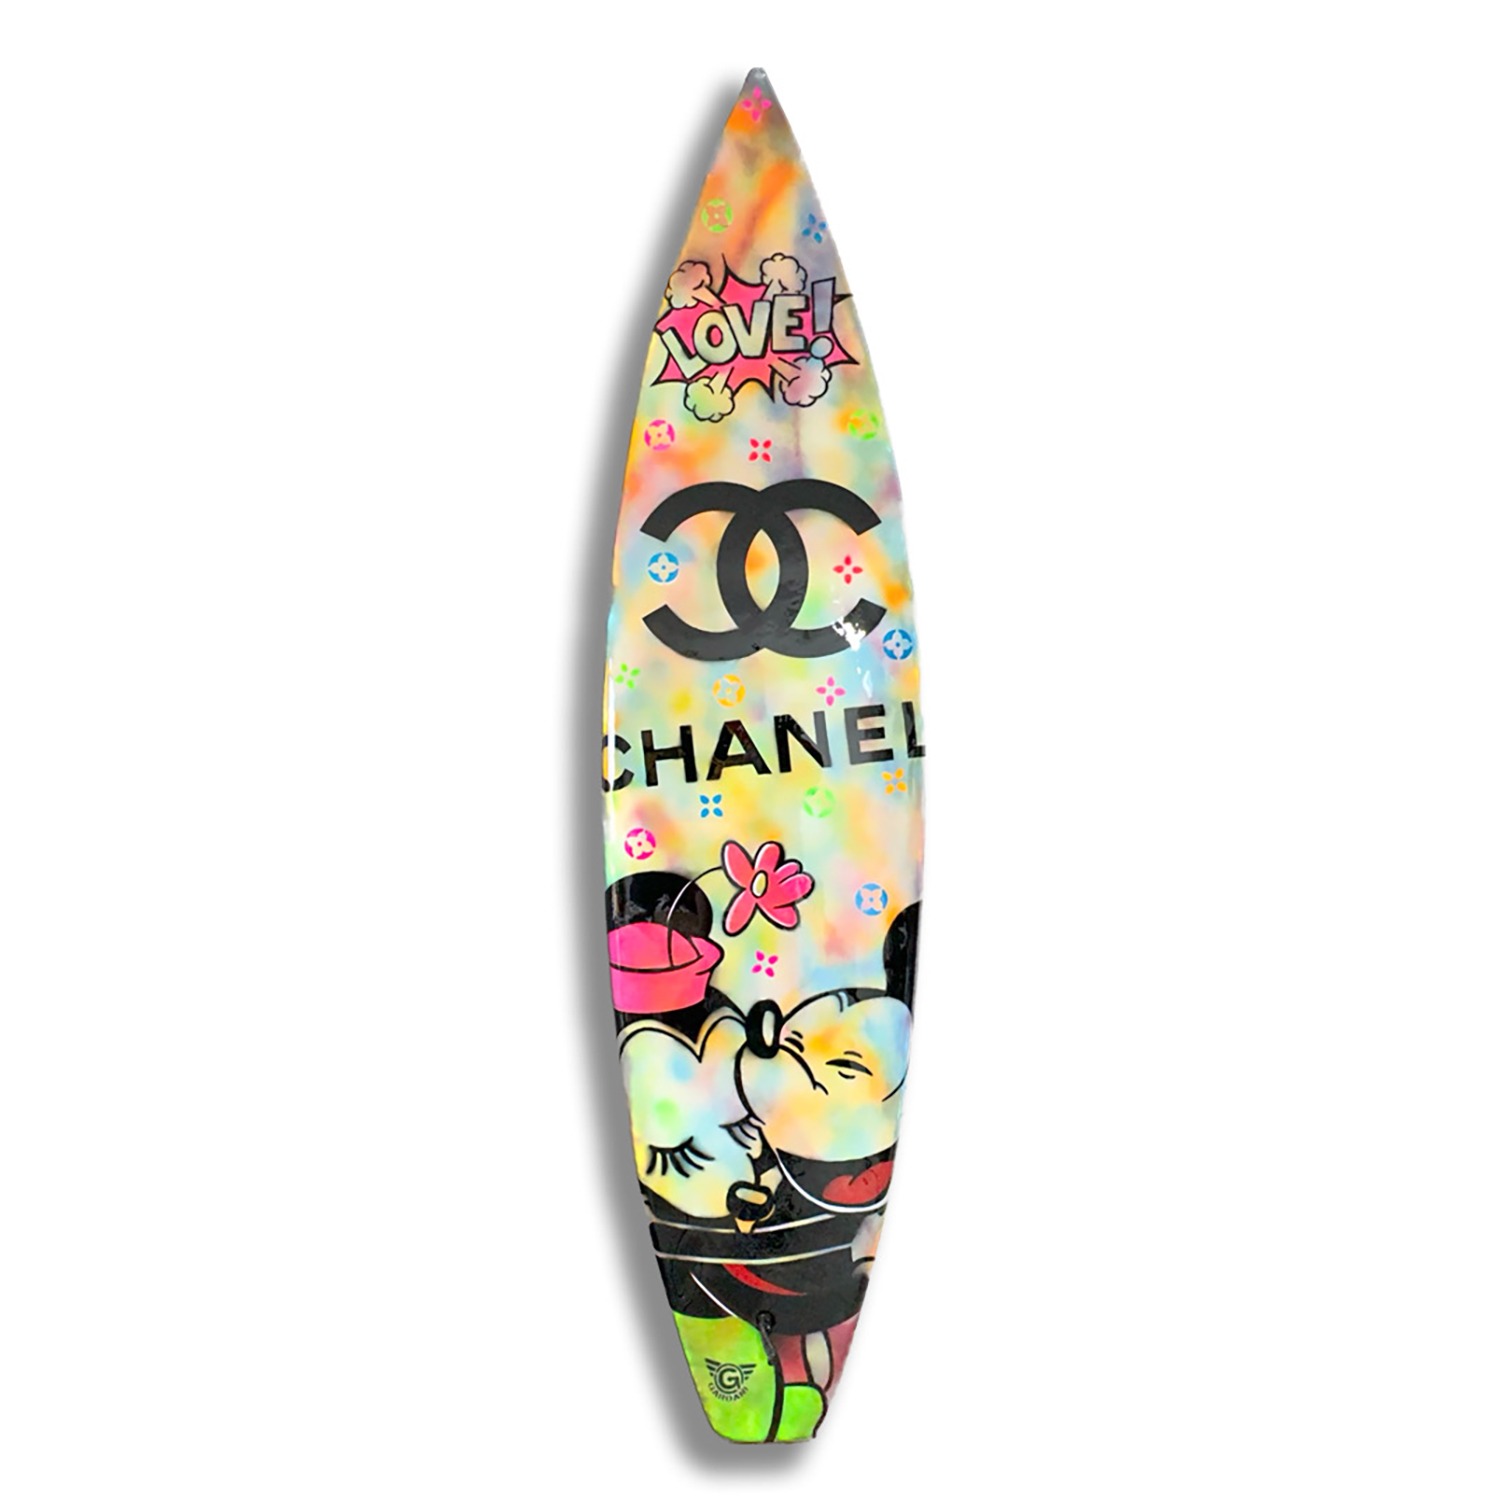 Chanel Surfboard 3 Art Print by Arteve Gallery - Fy